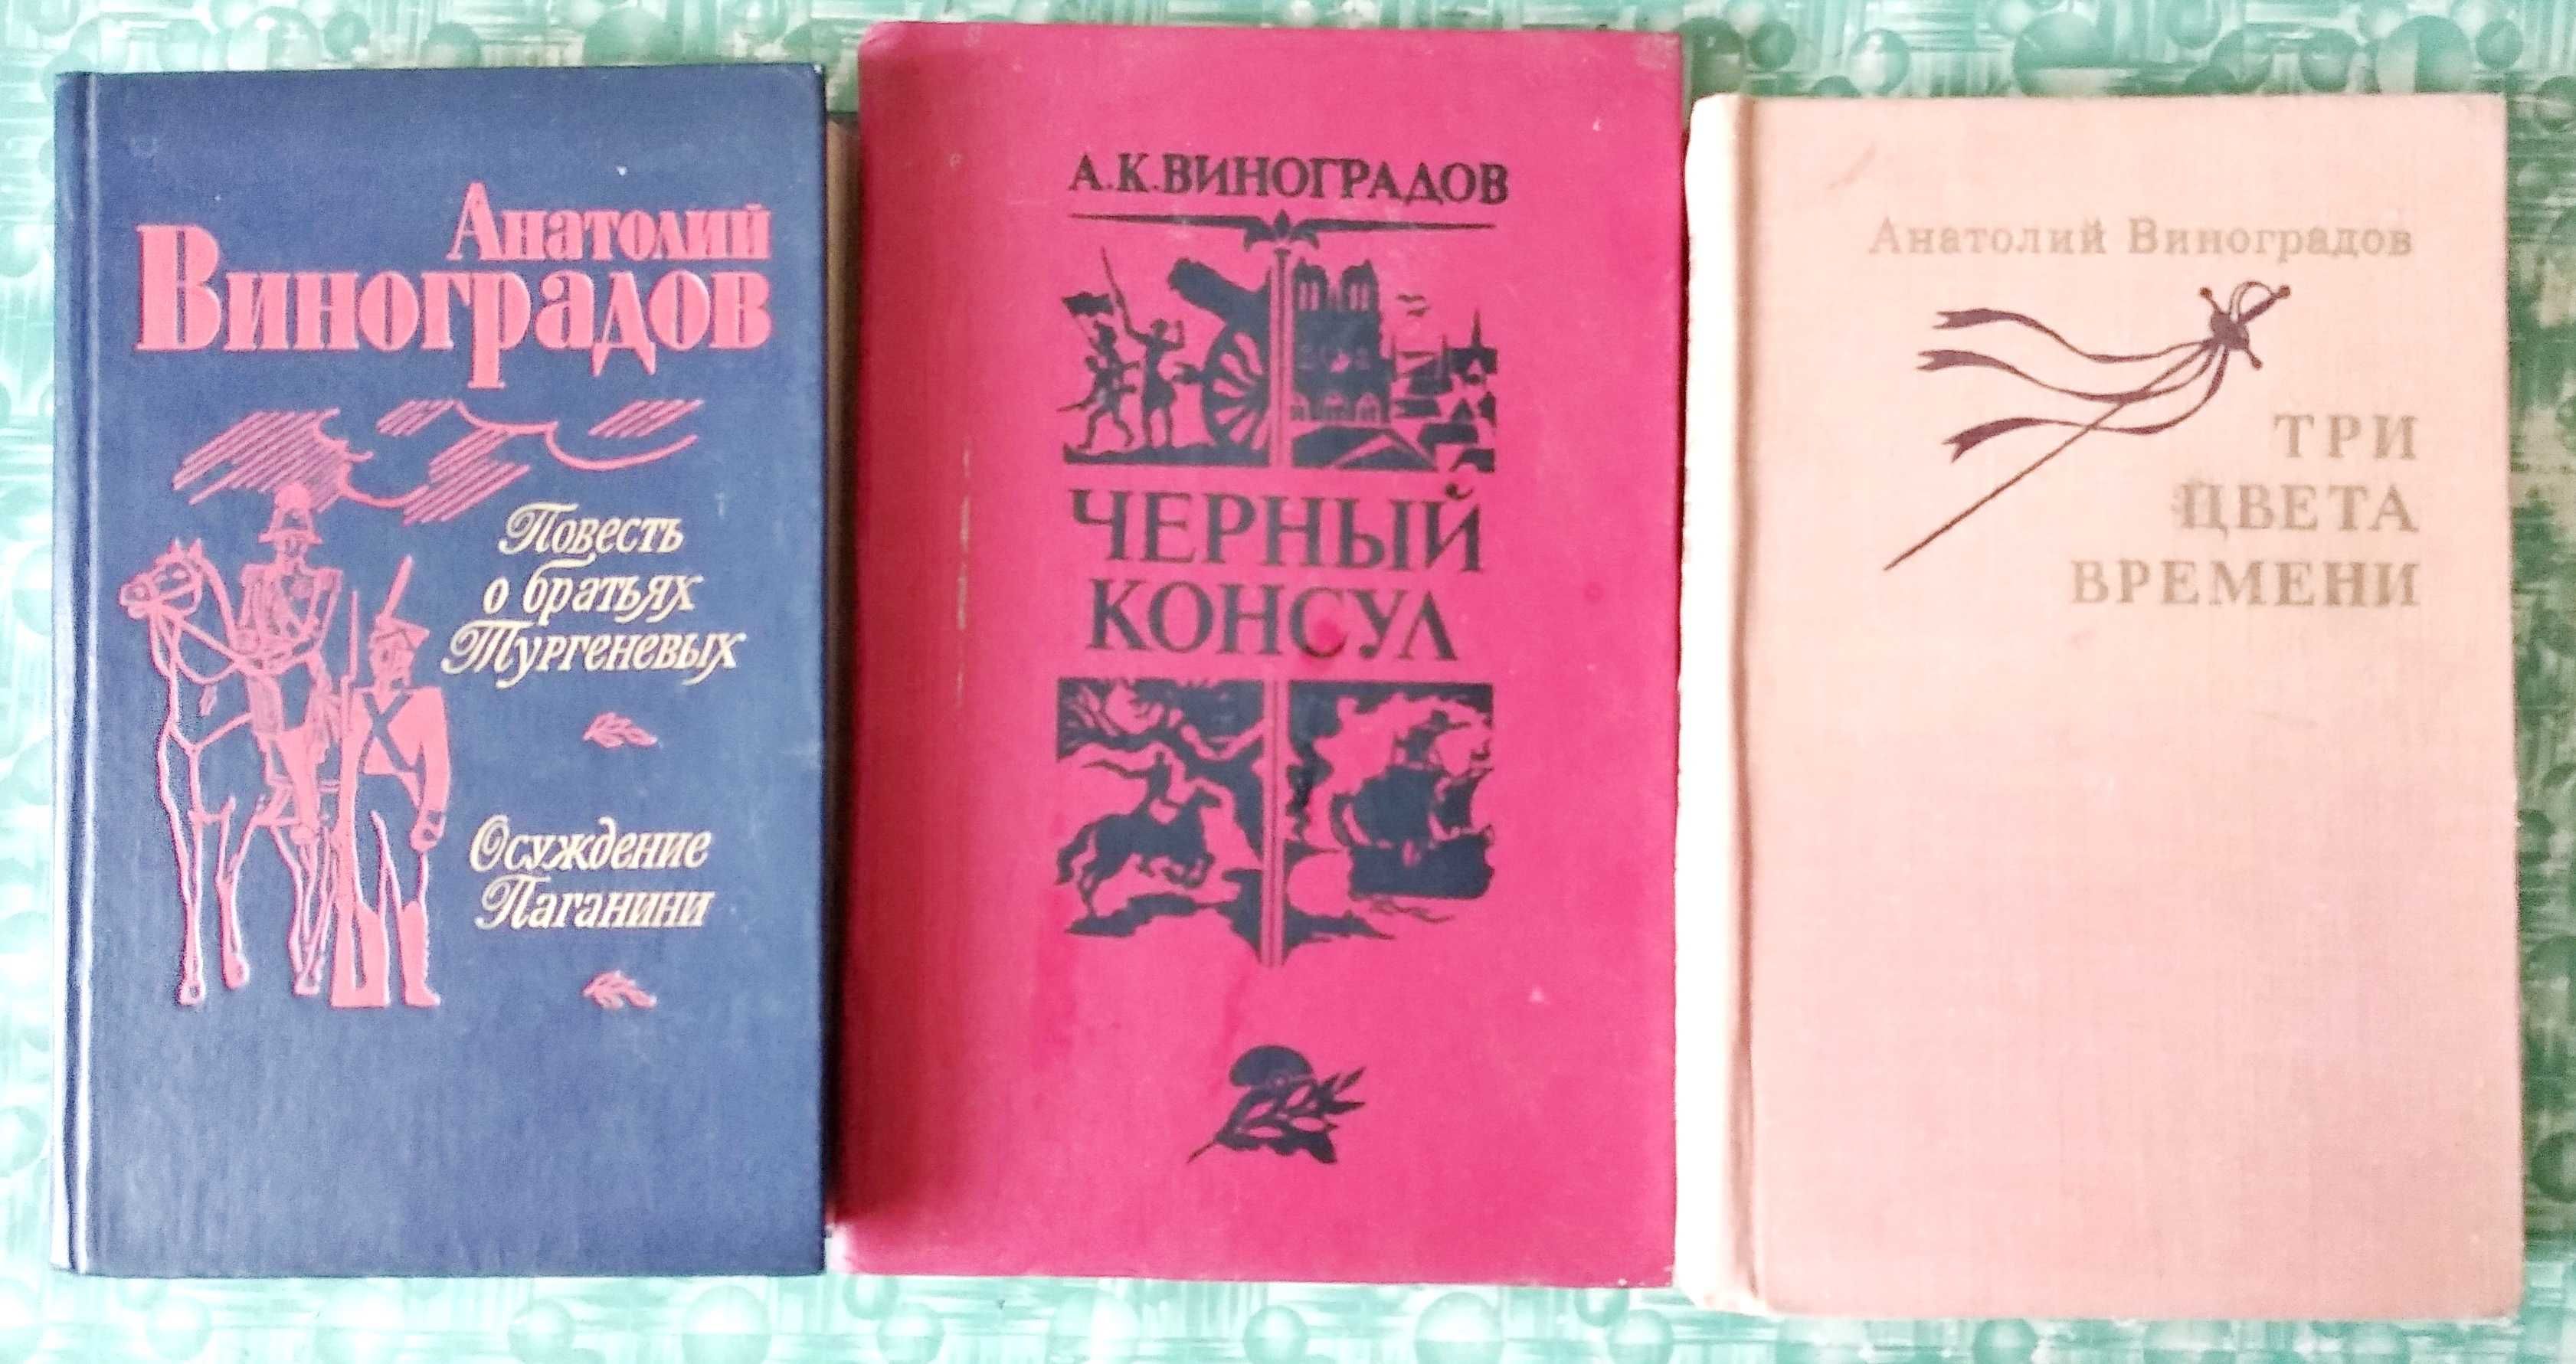 Анатолий Виноградов, 3 книги, цена дана за все